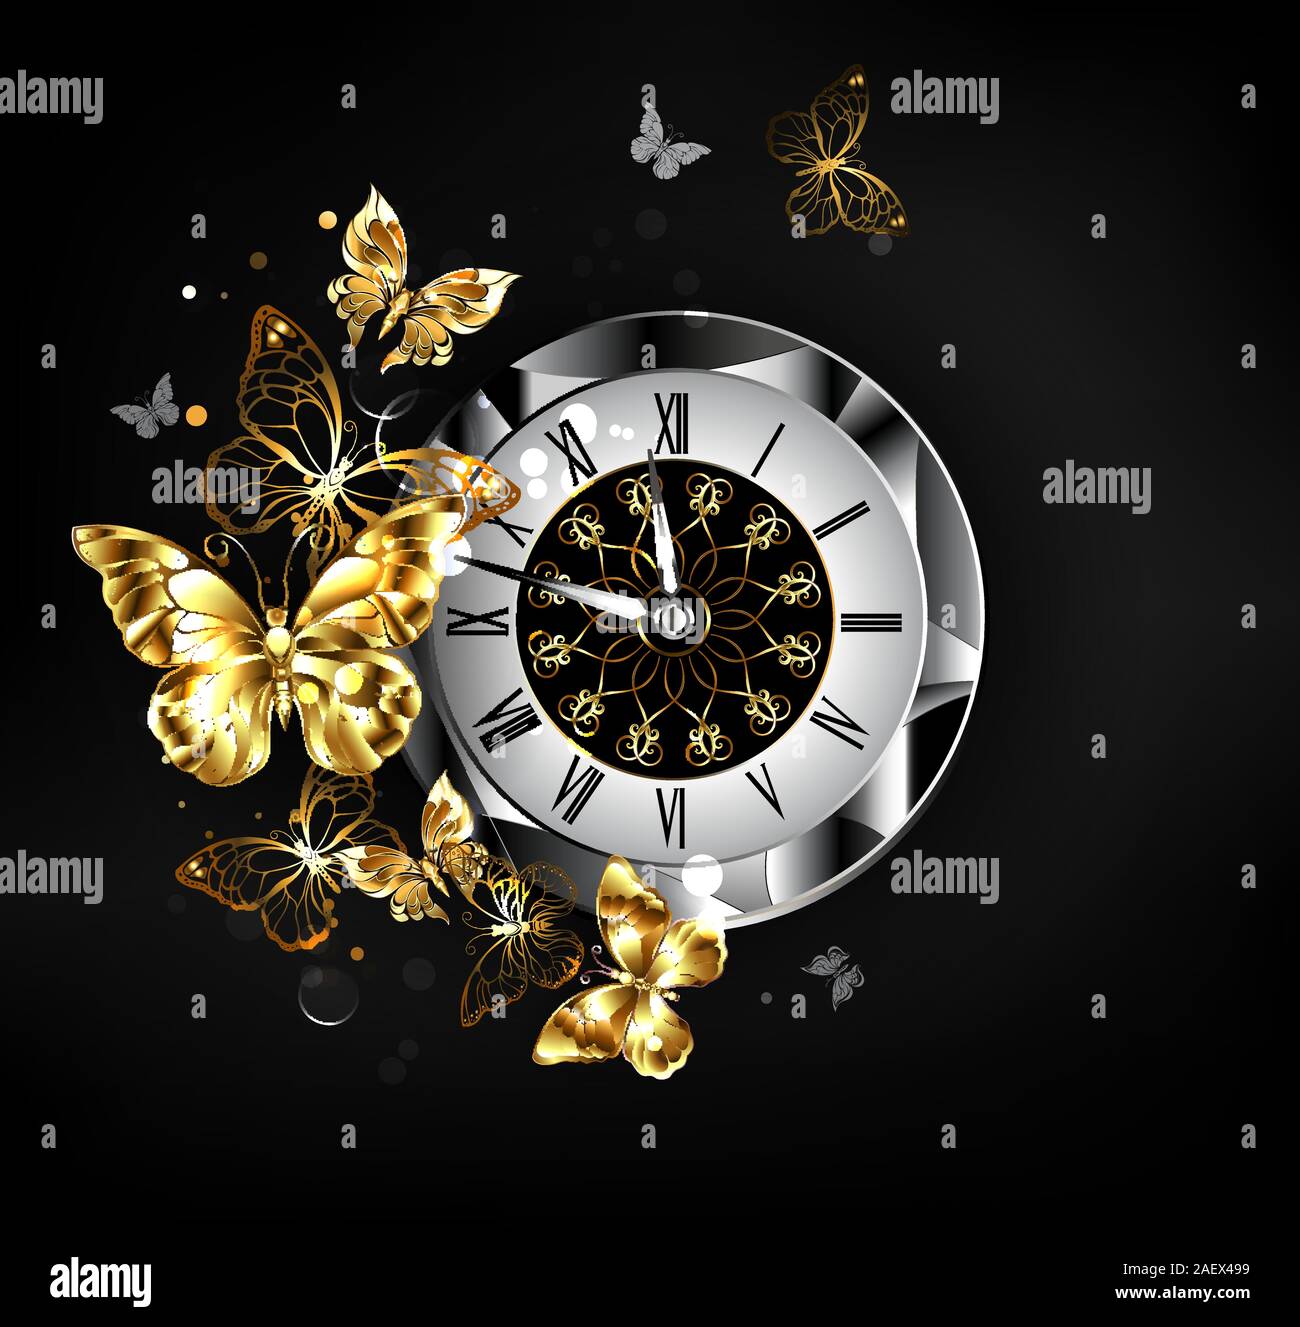 Horloge ancienne, agrémentées de cadran, chiffres romains noirs, avec le vol de l'or, des bijoux papillons sur fond noir. Illustration de Vecteur